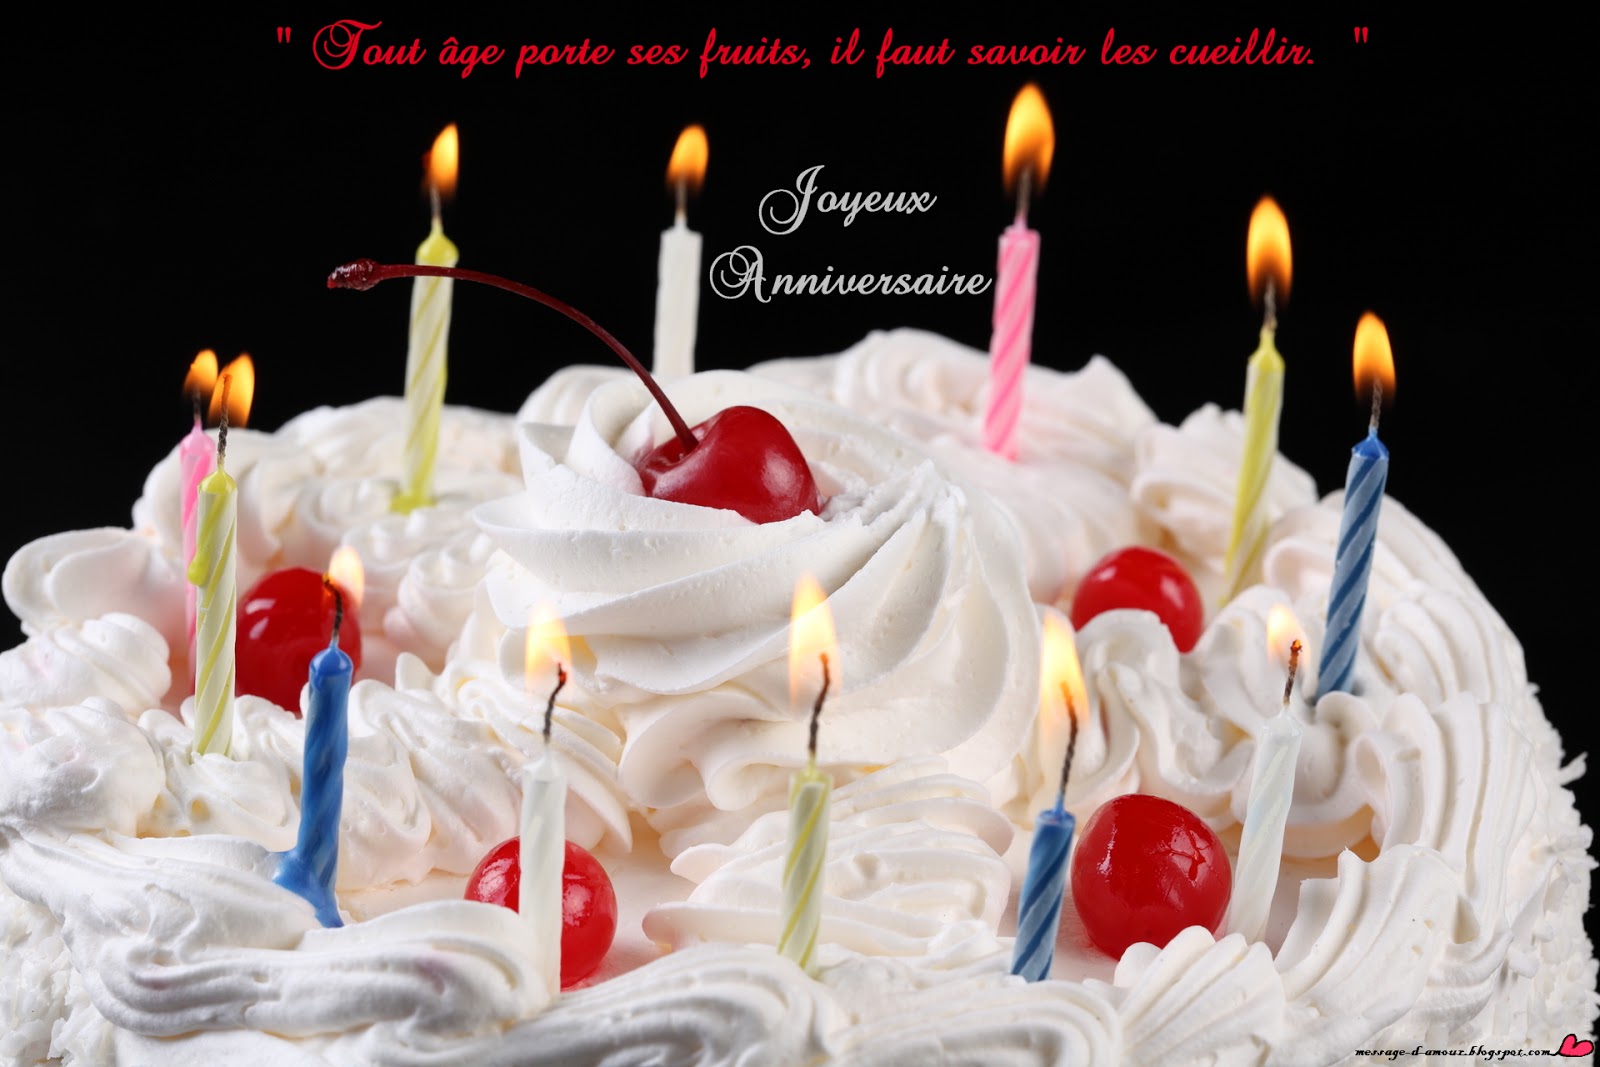 Un message pour souhaiter joyeux anniversaire